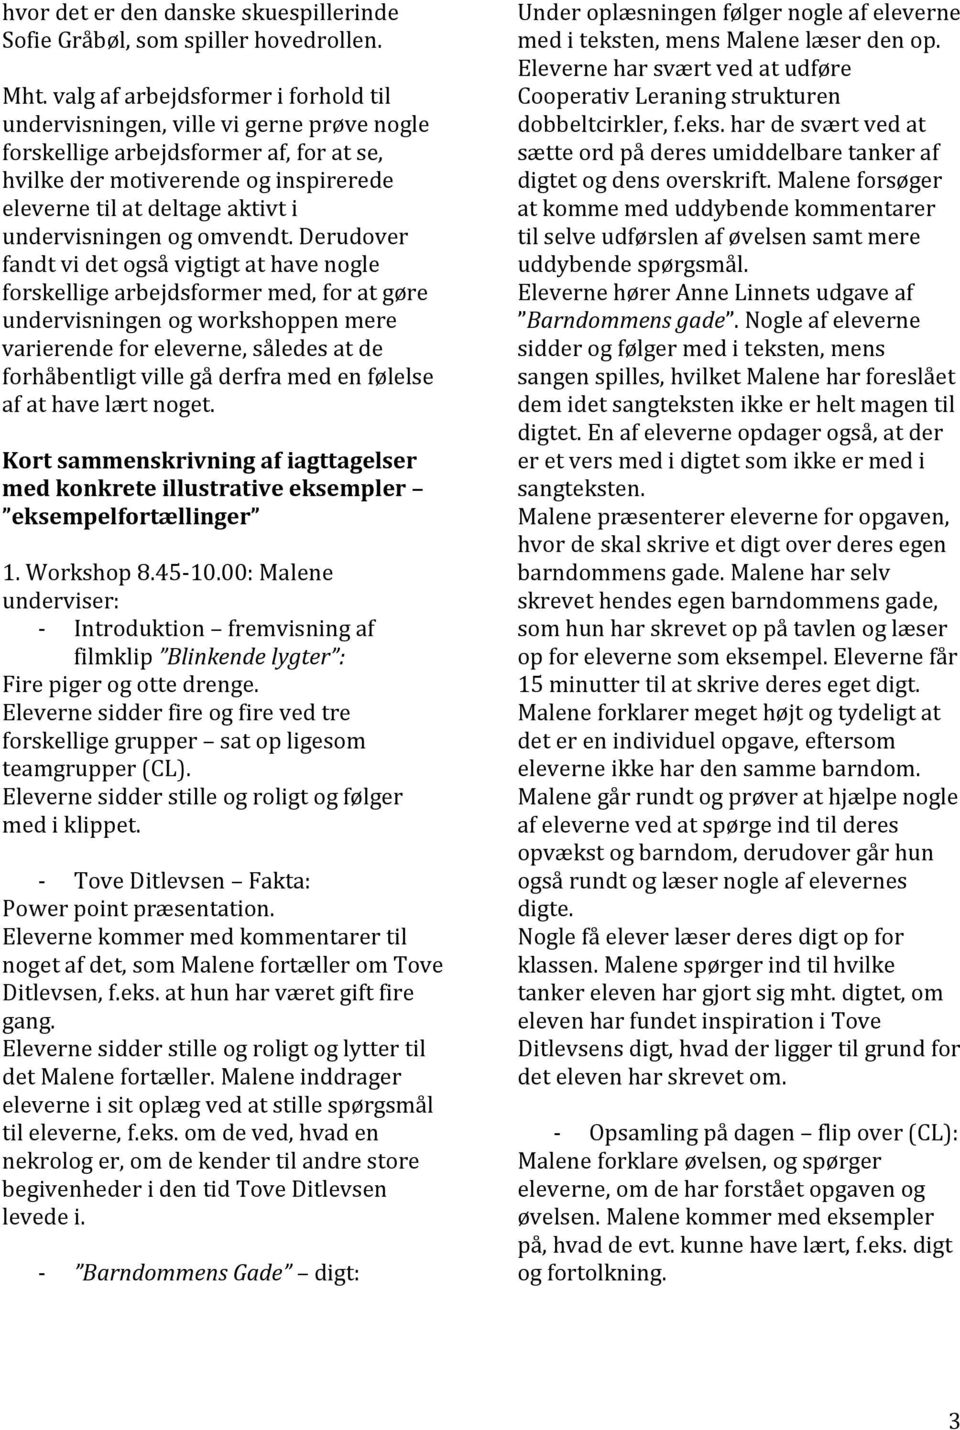 Barndommens Gade som Kanondag på Skovvangsskolen. Af Ditte Wainø, Malene  Rasmussen, Hanne Damgaard, Louise Maigaard, LIÅ PDF Free Download